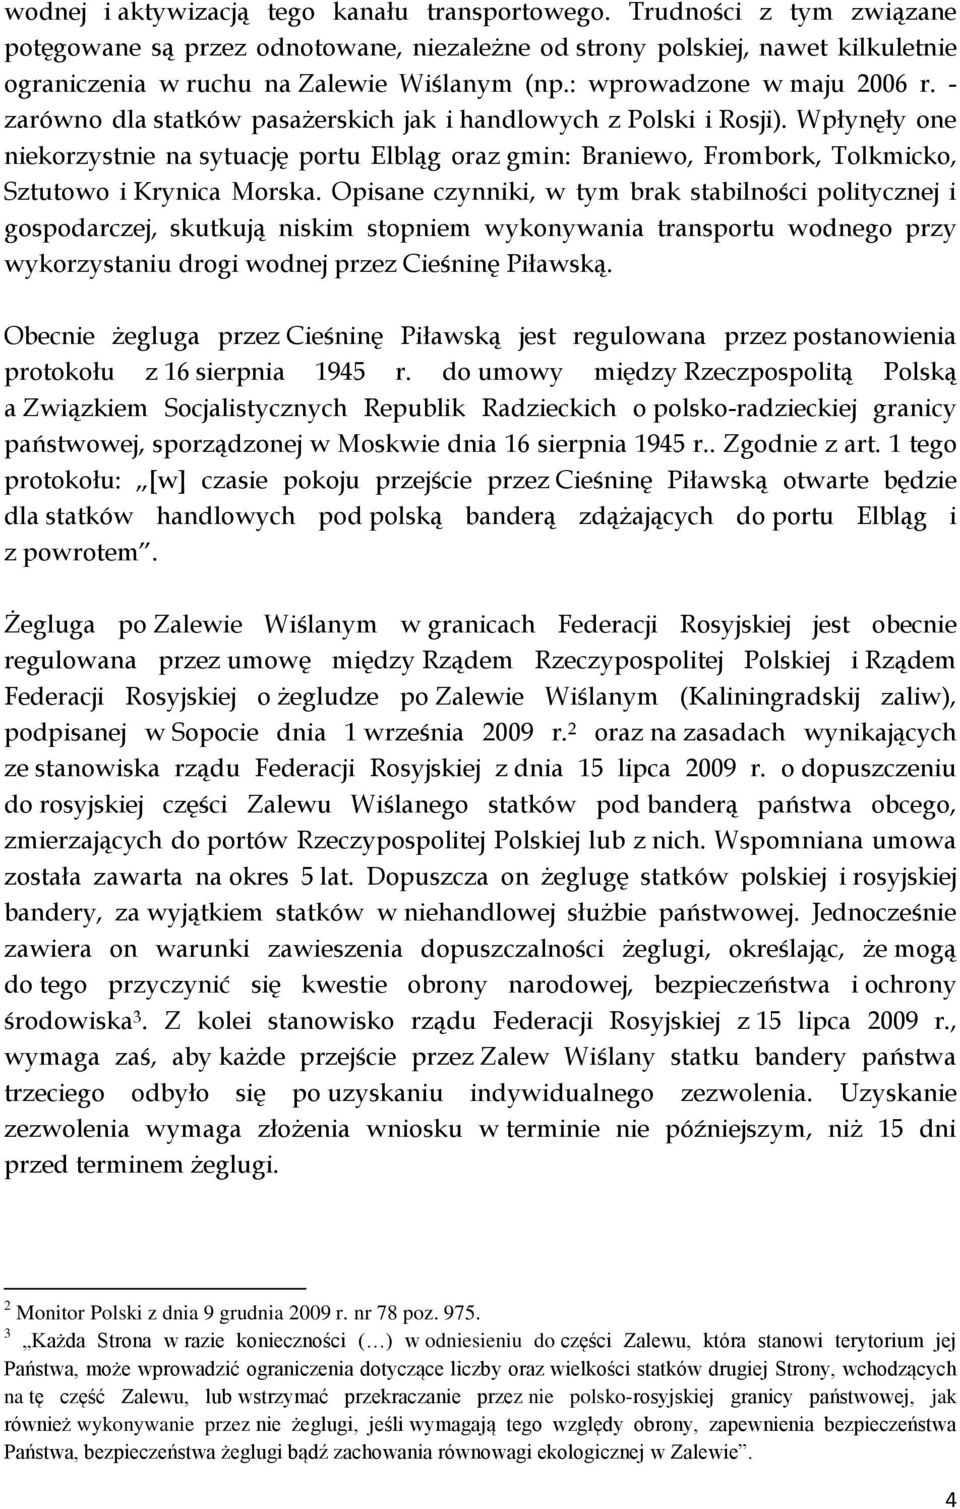 Wpłynęły one niekorzystnie na sytuację portu Elbląg oraz gmin: Braniewo, Frombork, Tolkmicko, Sztutowo i Krynica Morska.